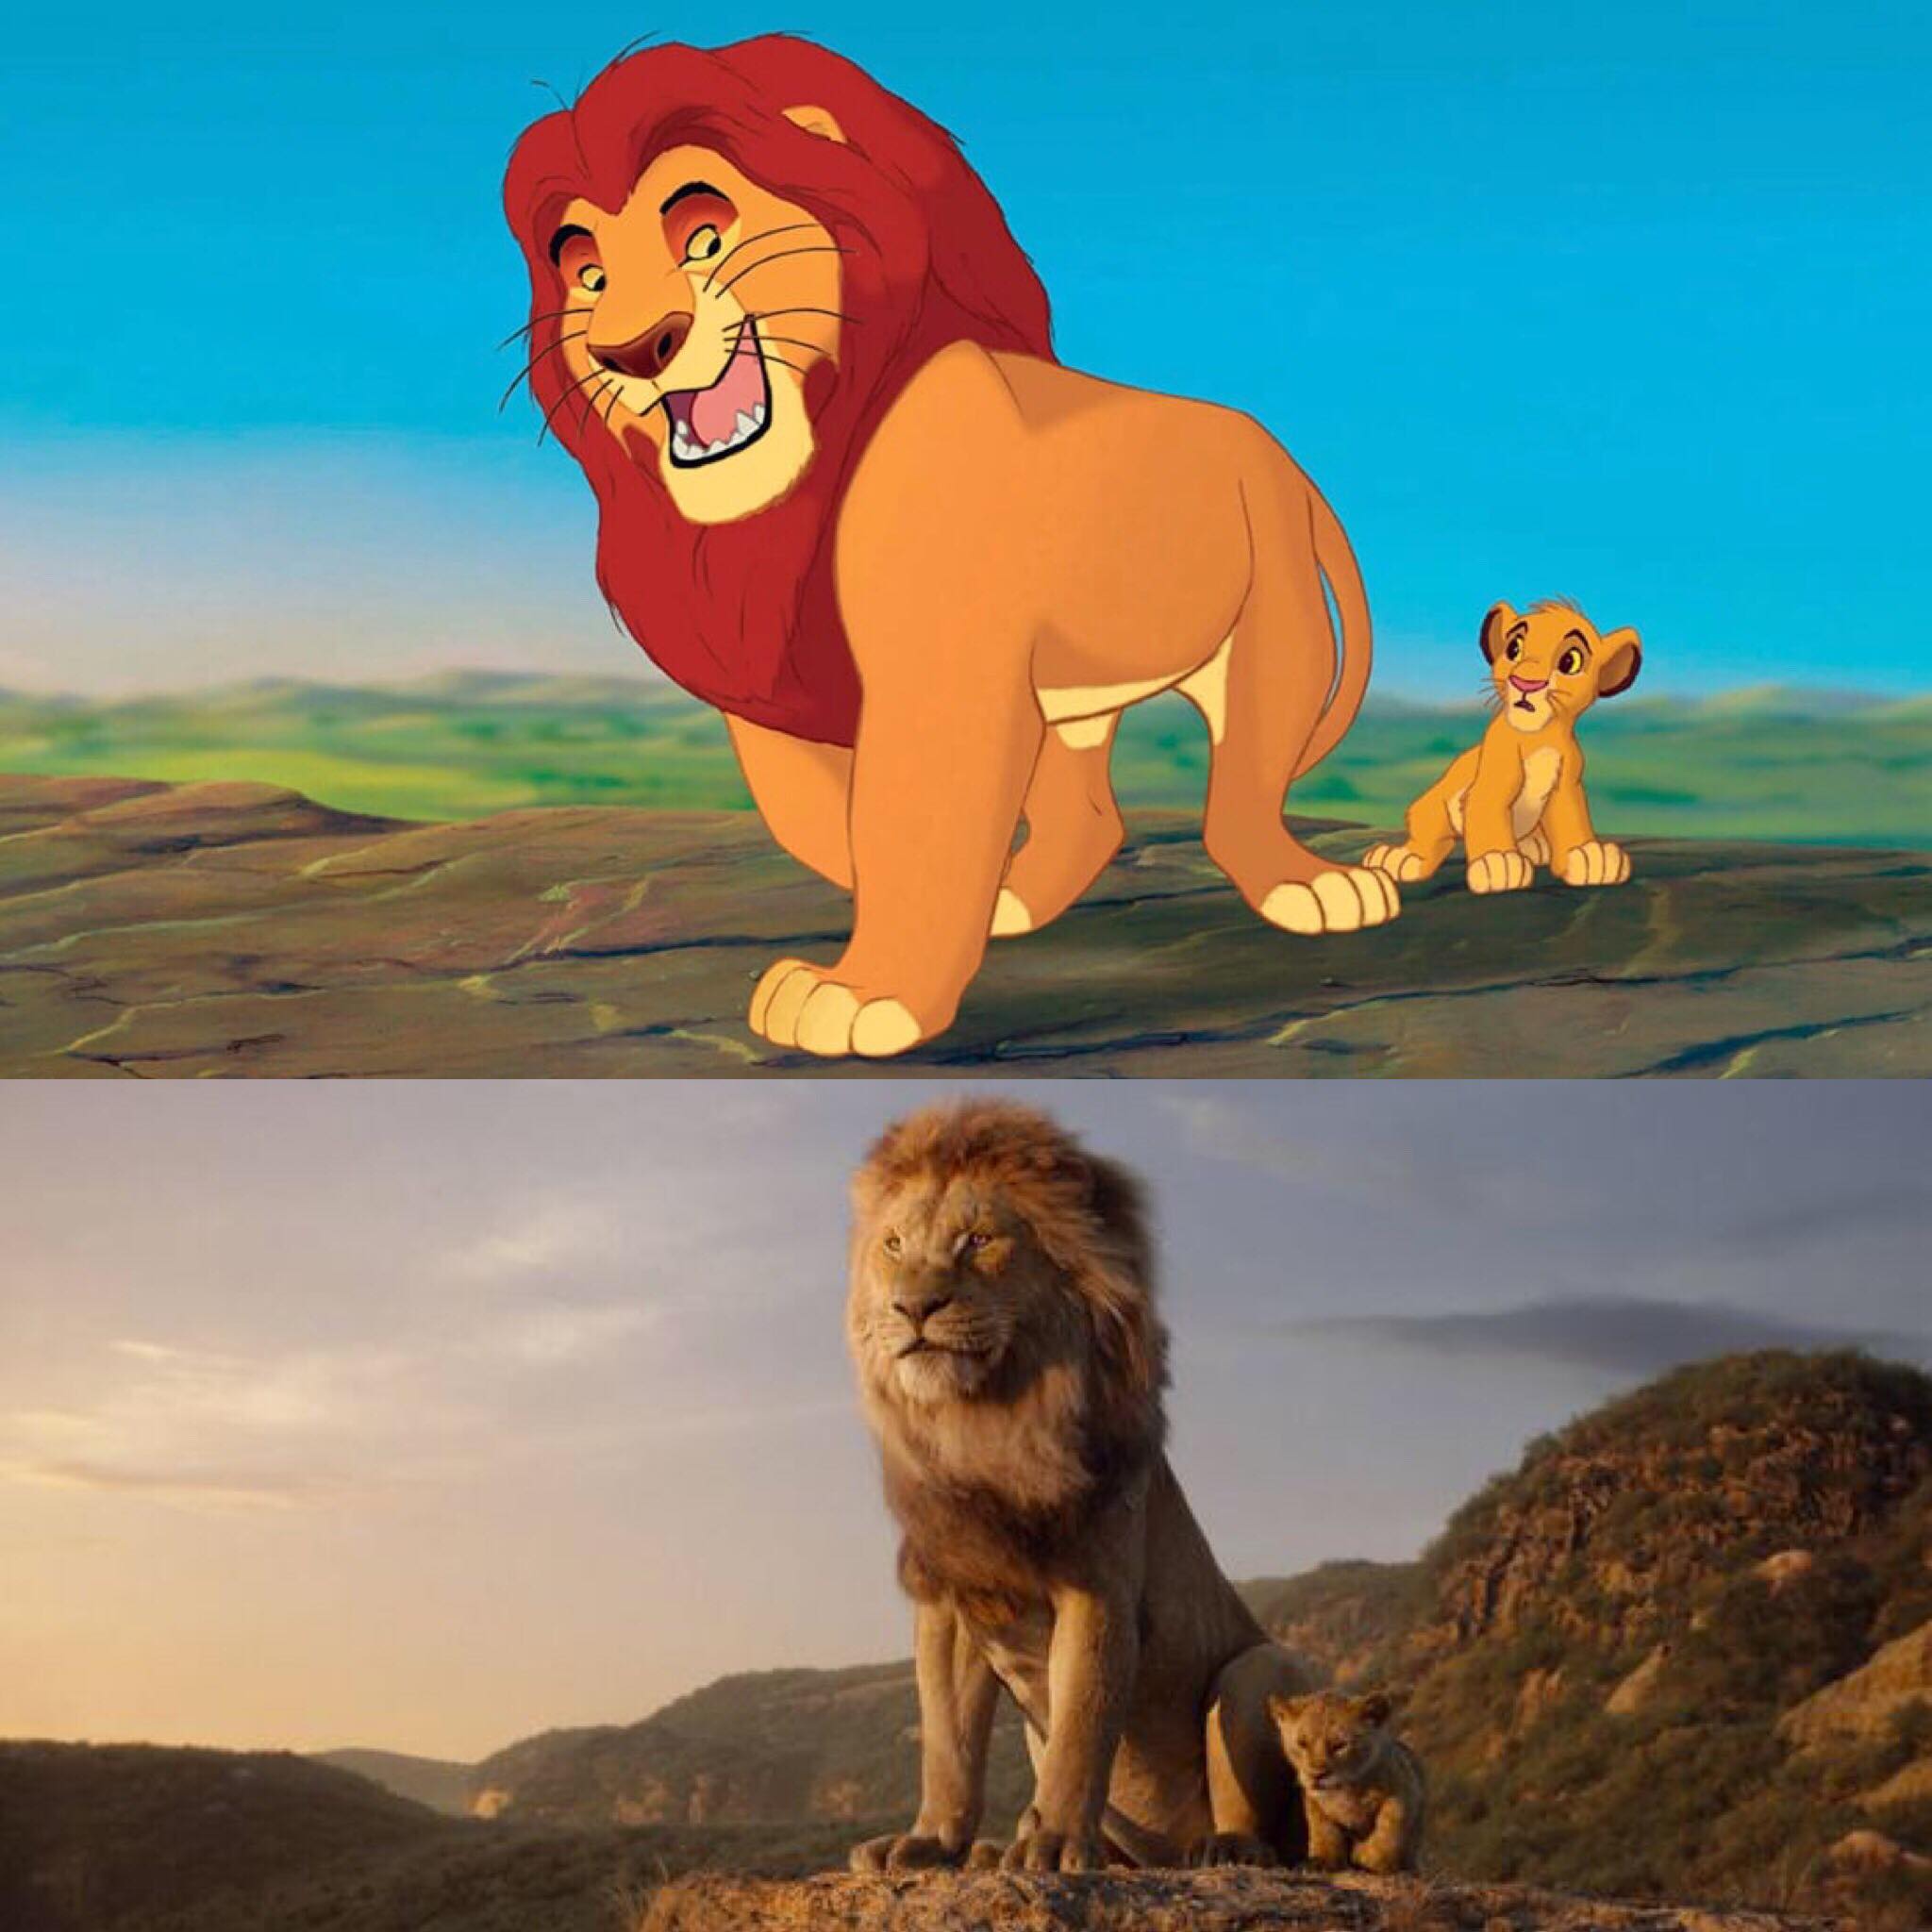 2024 г для львов. Король Лев й1994. Король Лев 2019 Симба. Король Лев 1994 Симба. Король Лев 1994 и 2019.